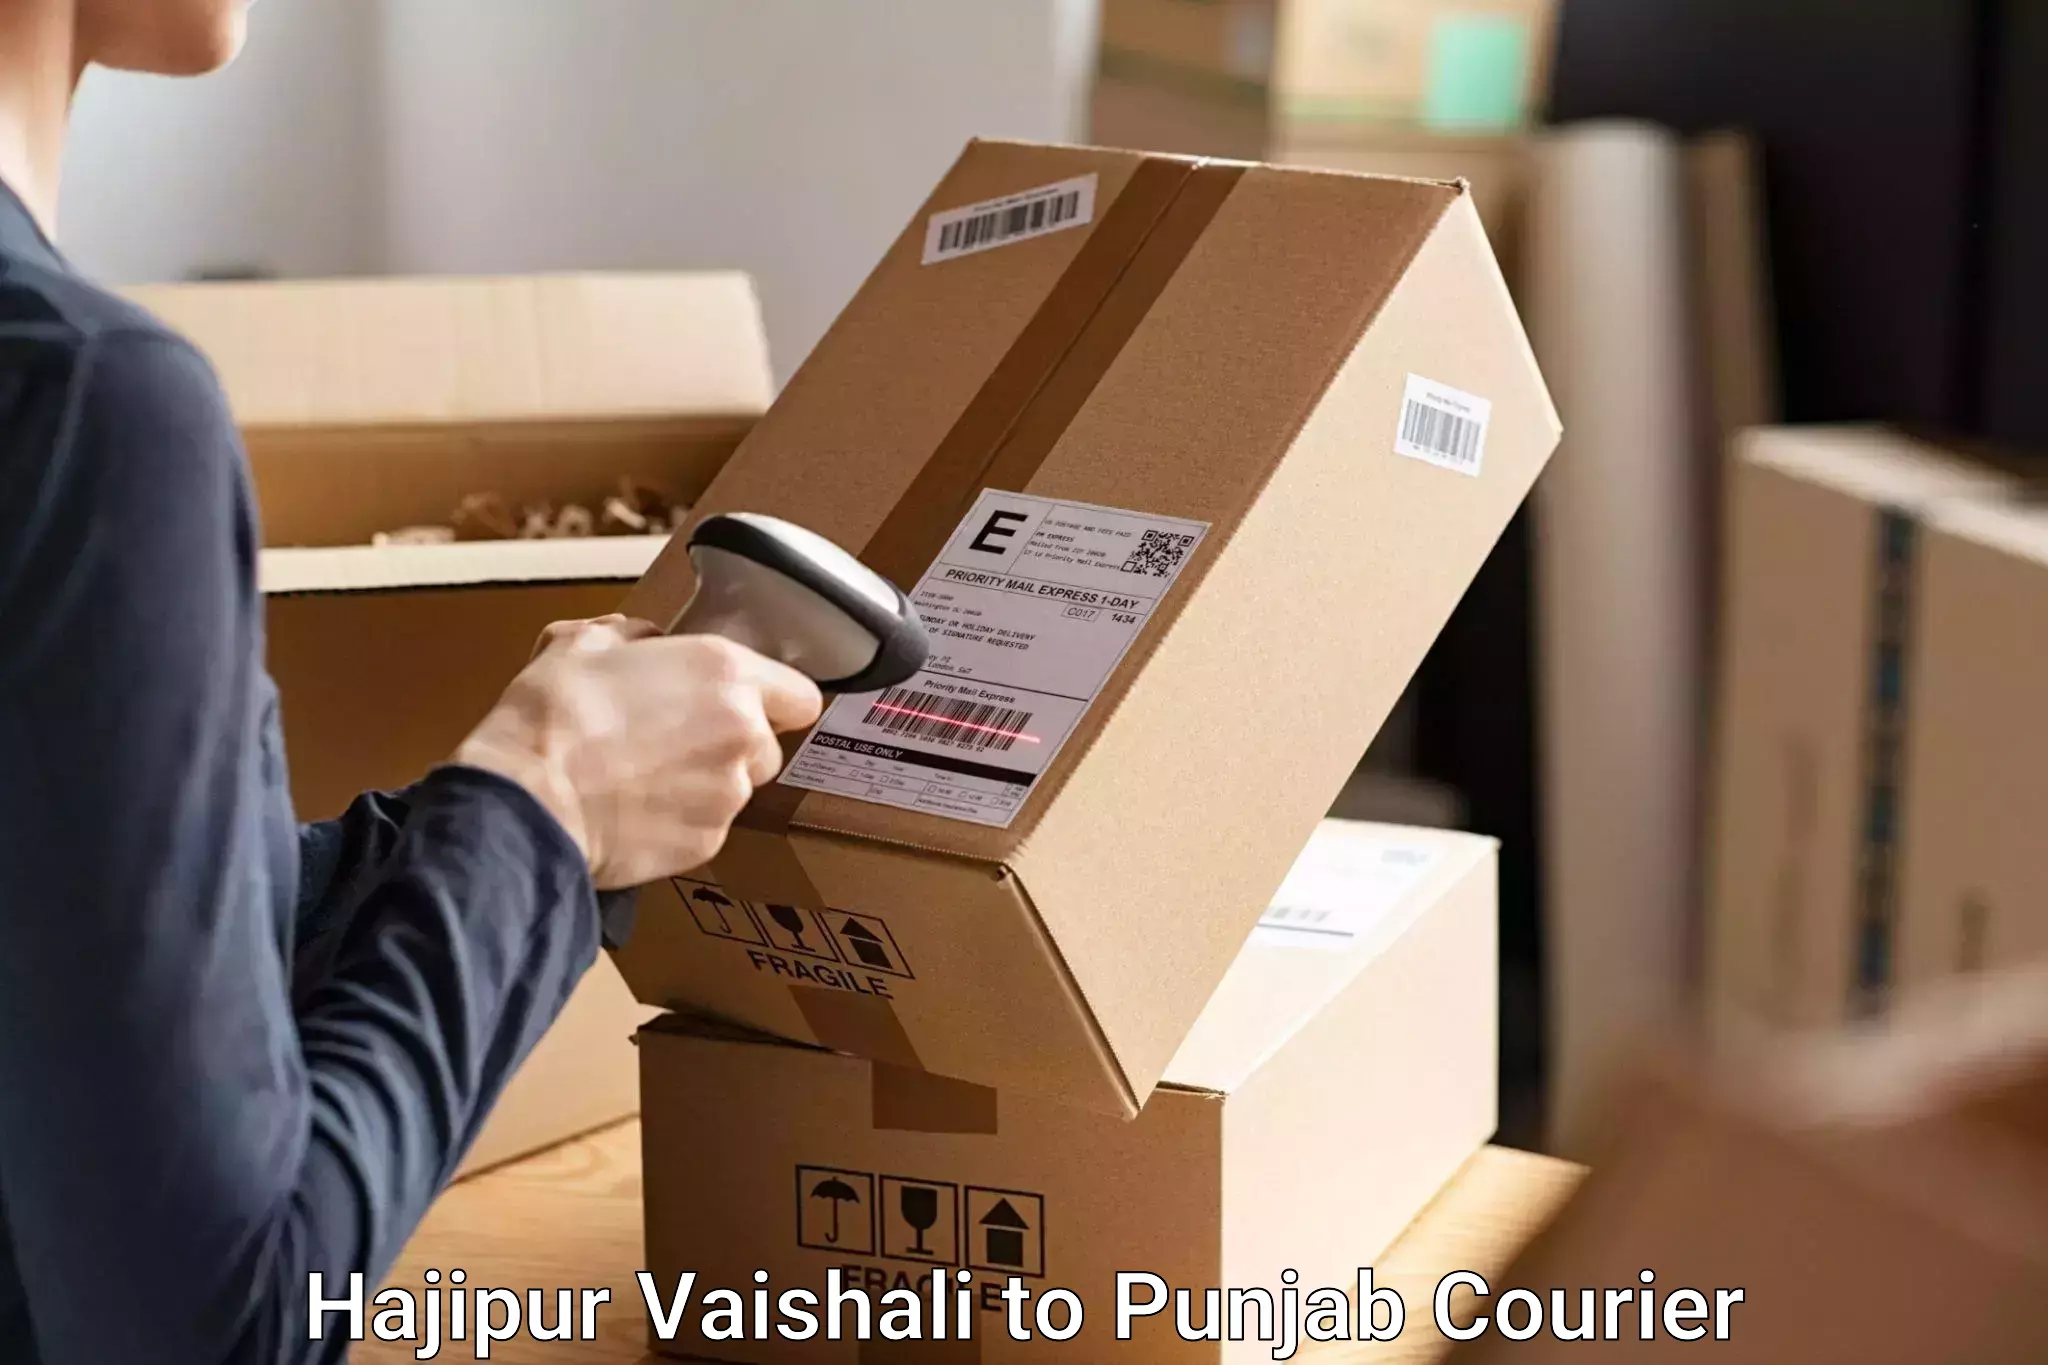 Luggage forwarding service Hajipur Vaishali to Punjab